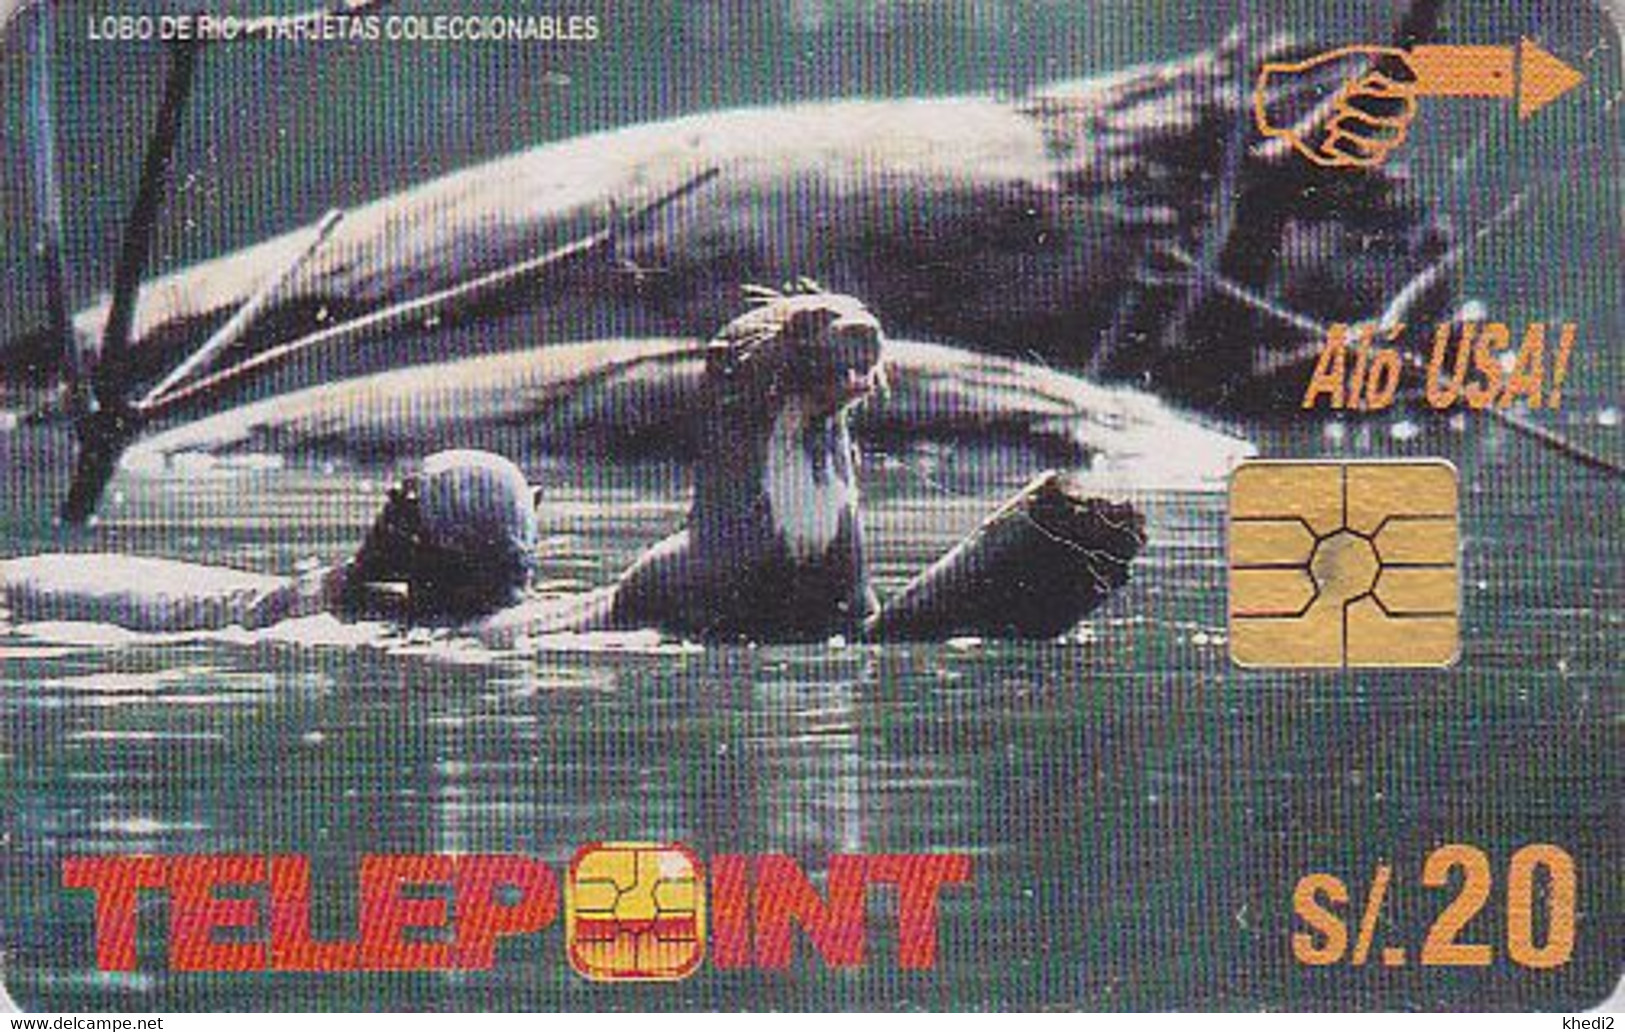 Télécarte à Puce PEROU - ANIMAL - LOUTRE - OTTER - PERU Chip Phonecard - 164 - Peru